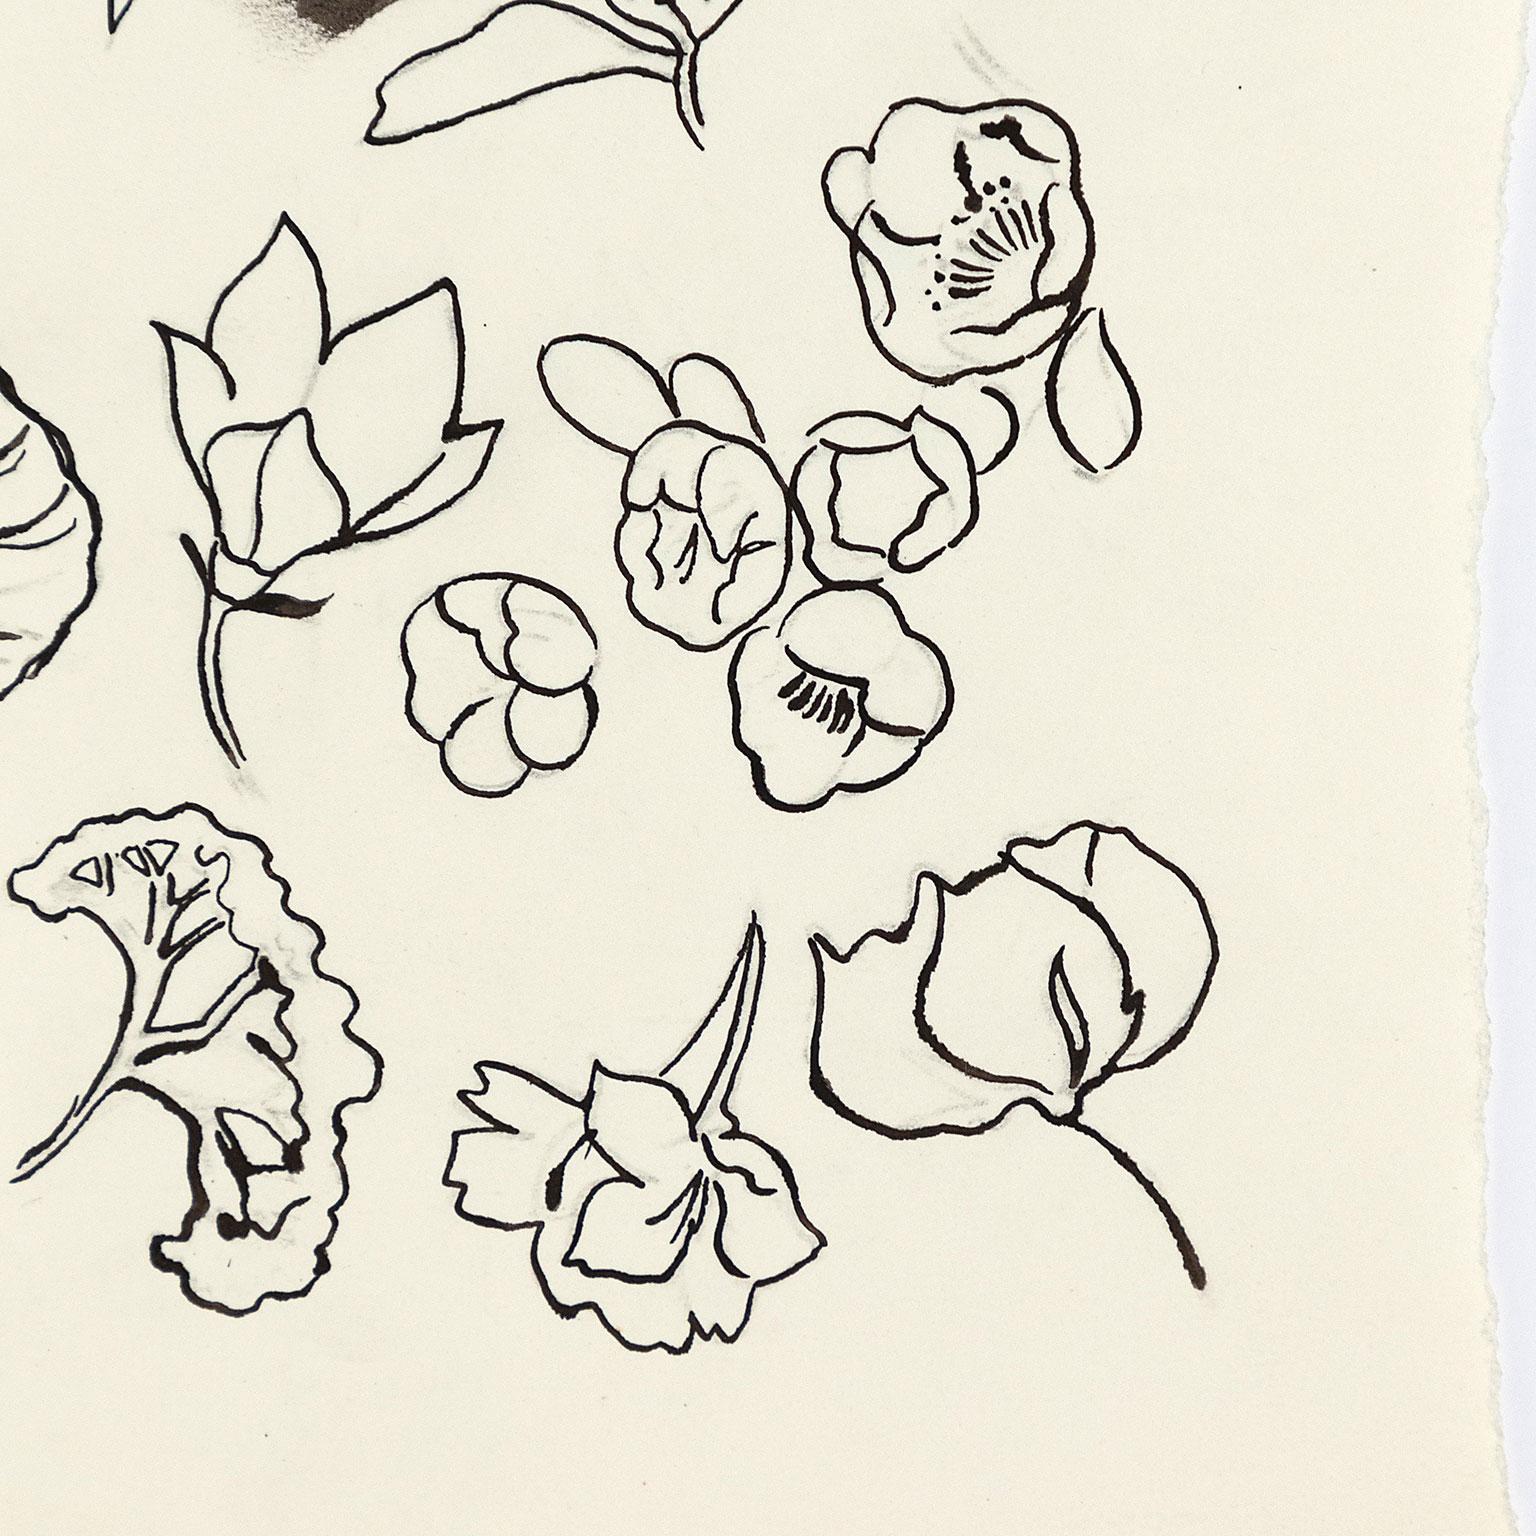 Andy Warhol ist der wohl bedeutendste amerikanische Künstler des 20. Jahrhunderts. In den 1950er Jahren war er ein gefragter und gefeierter Illustrator, der für die renommiertesten Publikationen (wie Harper's Bazaar) und eleganten Geschäfte (wie